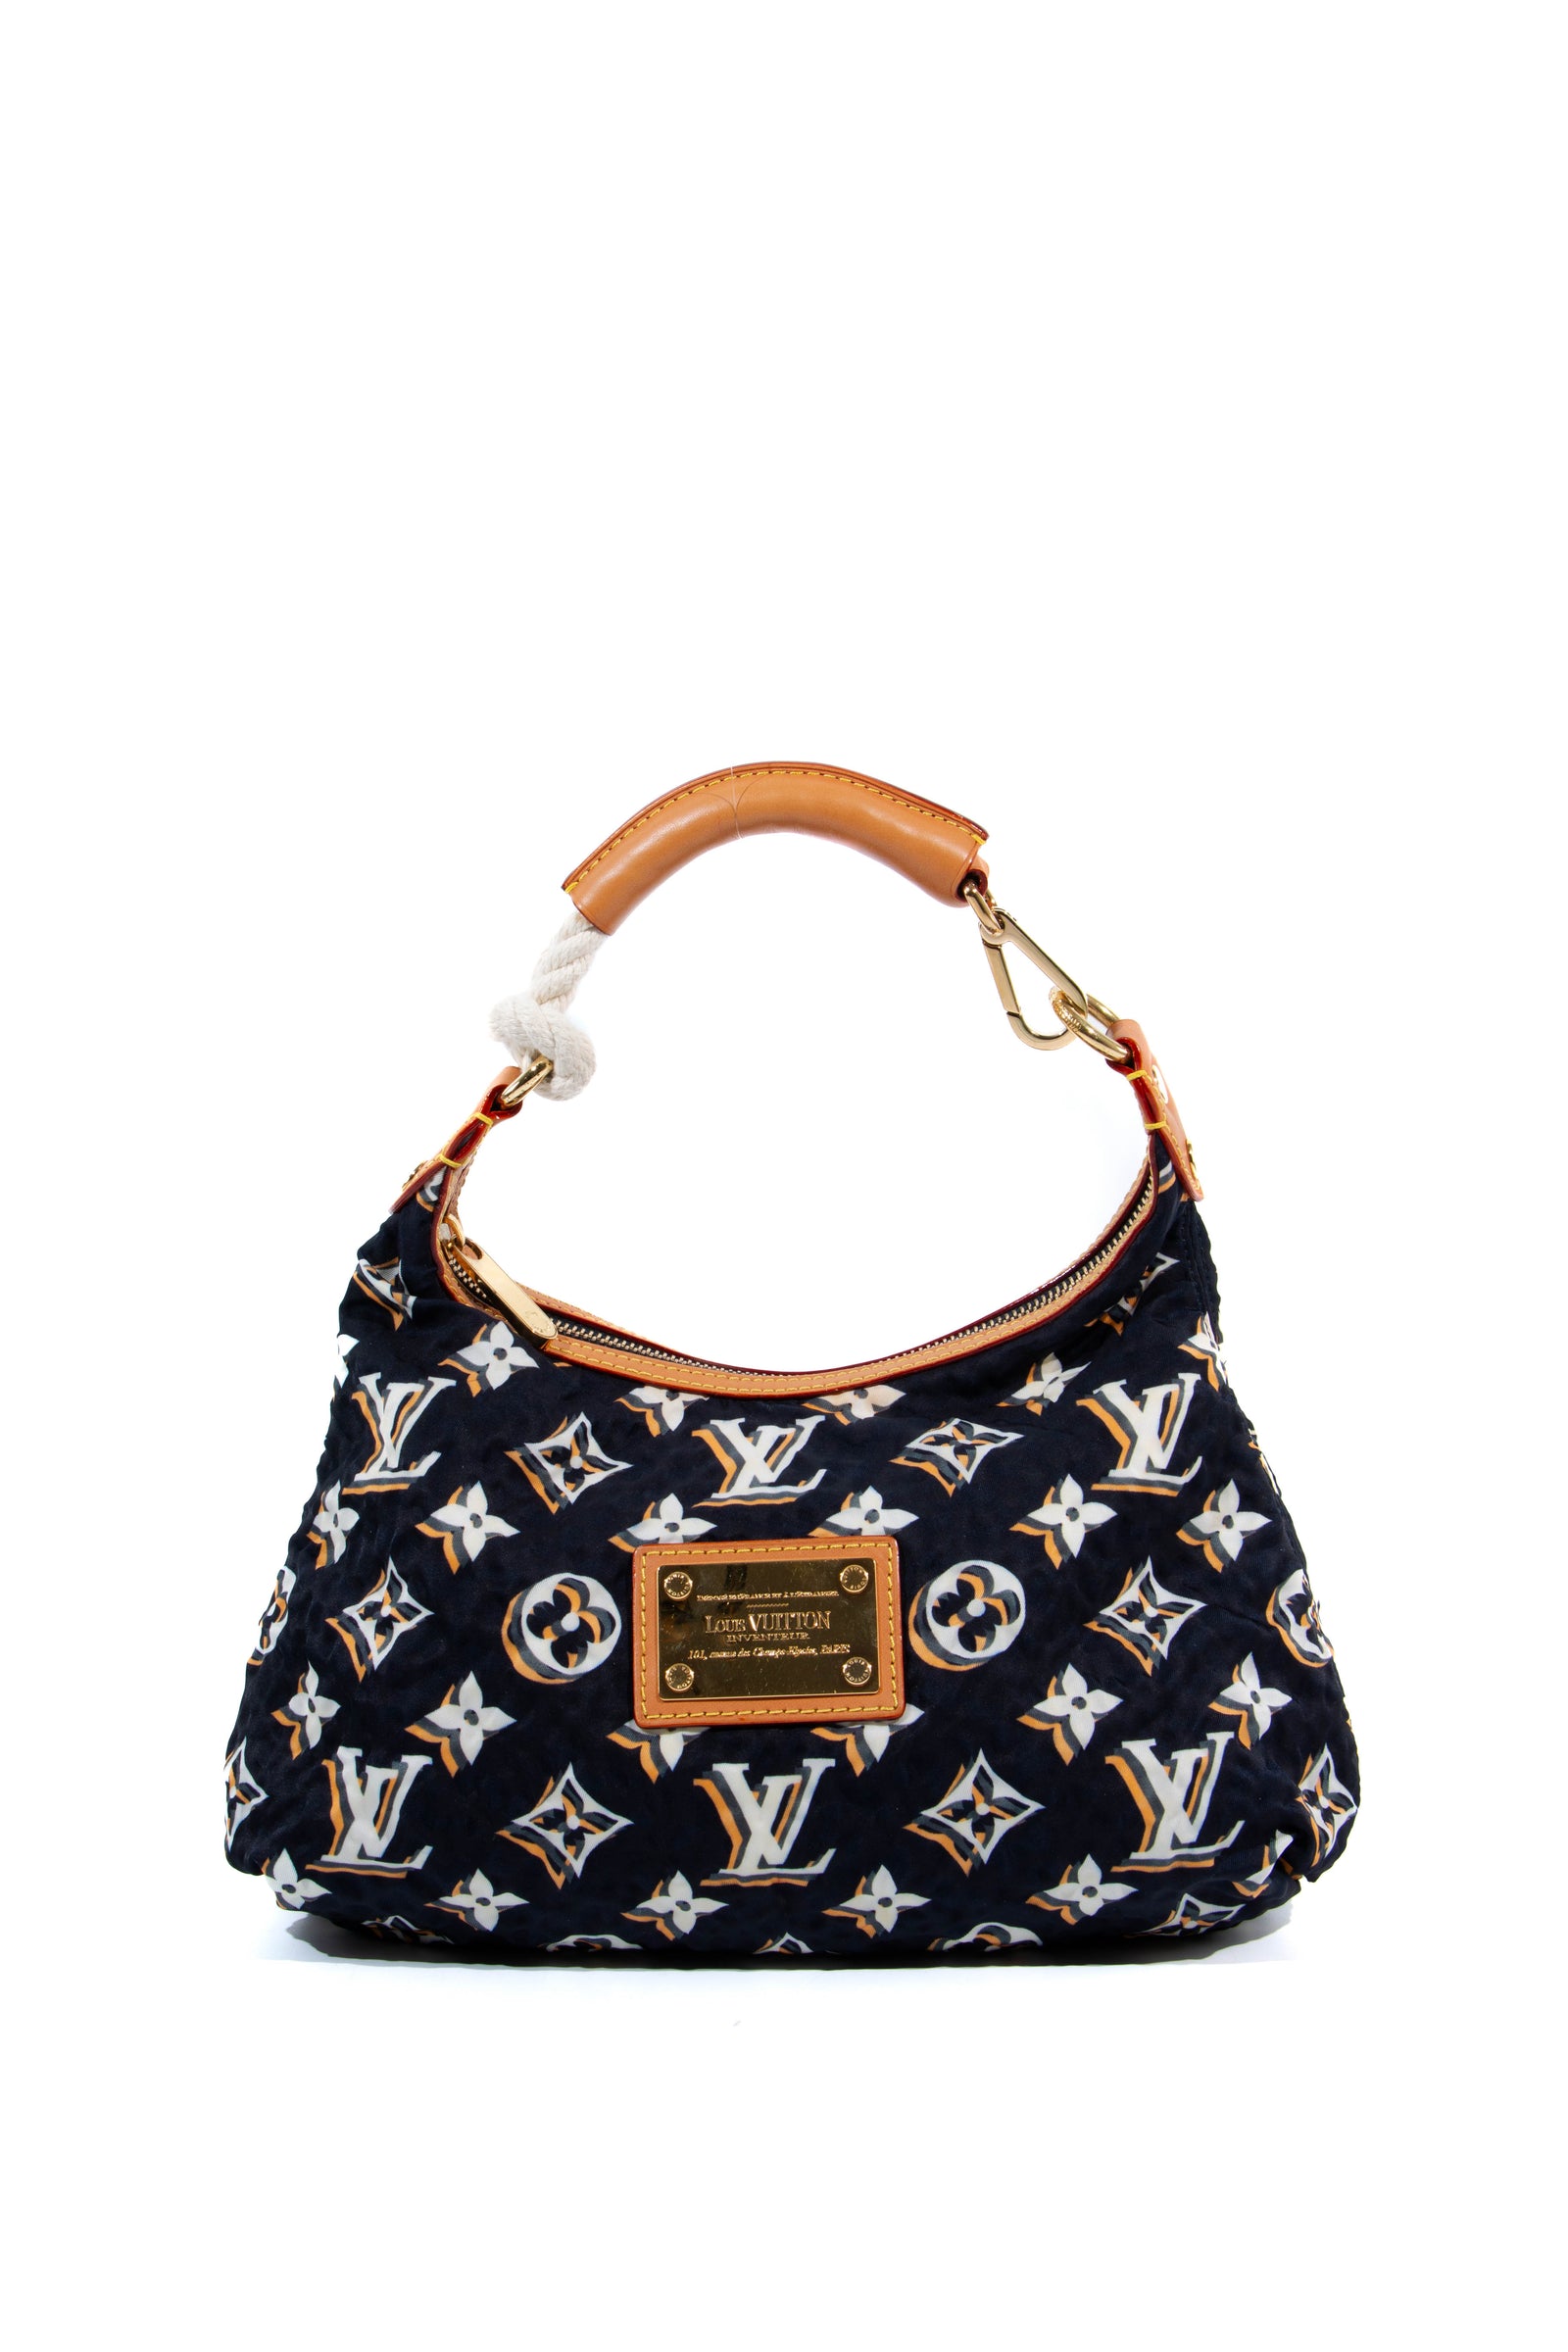 Louis Vuitton, Bags, Authentic Louis Vuitton Speedy 35 My Heritage  Satchel